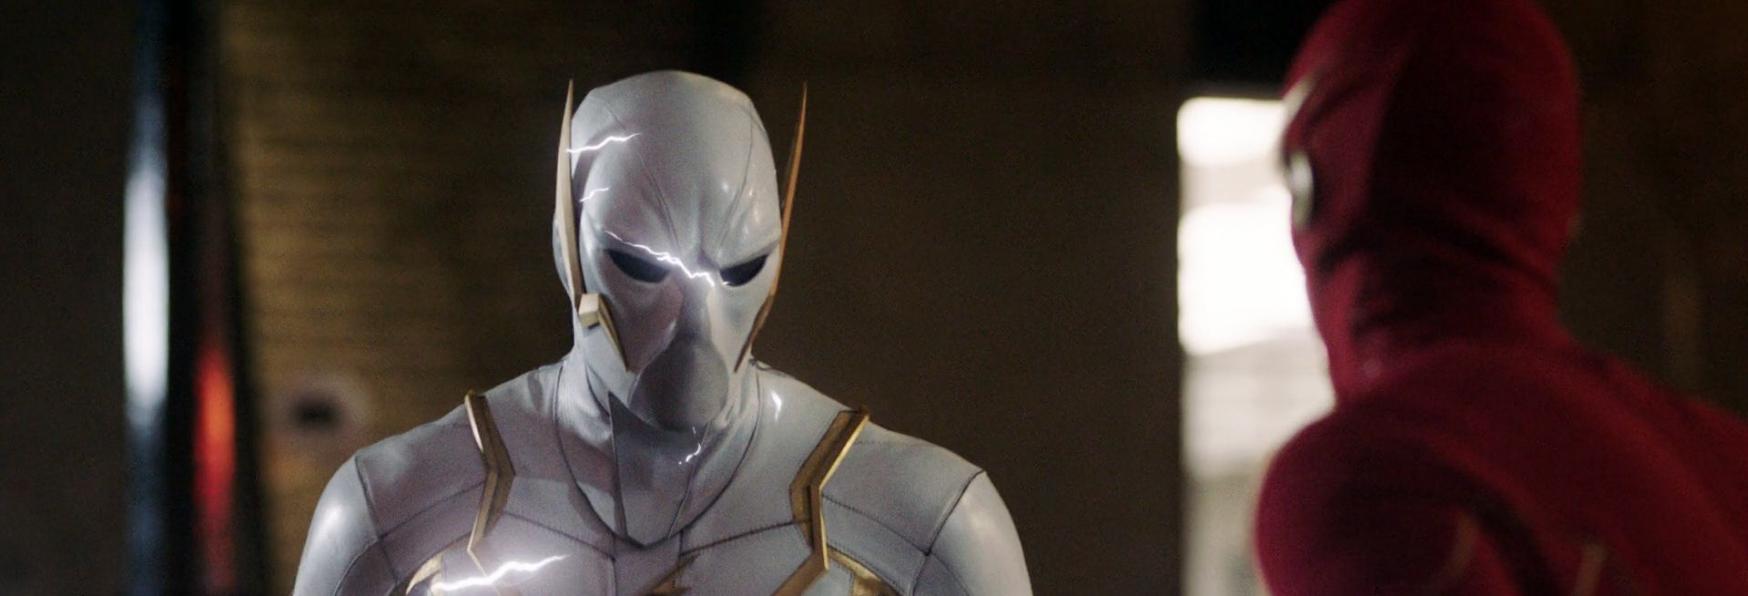 The Flash 7: lo Showrunner rivela che la Nuova Stagione svelerà maggiori Dettagli sul Mistero di Godspeed